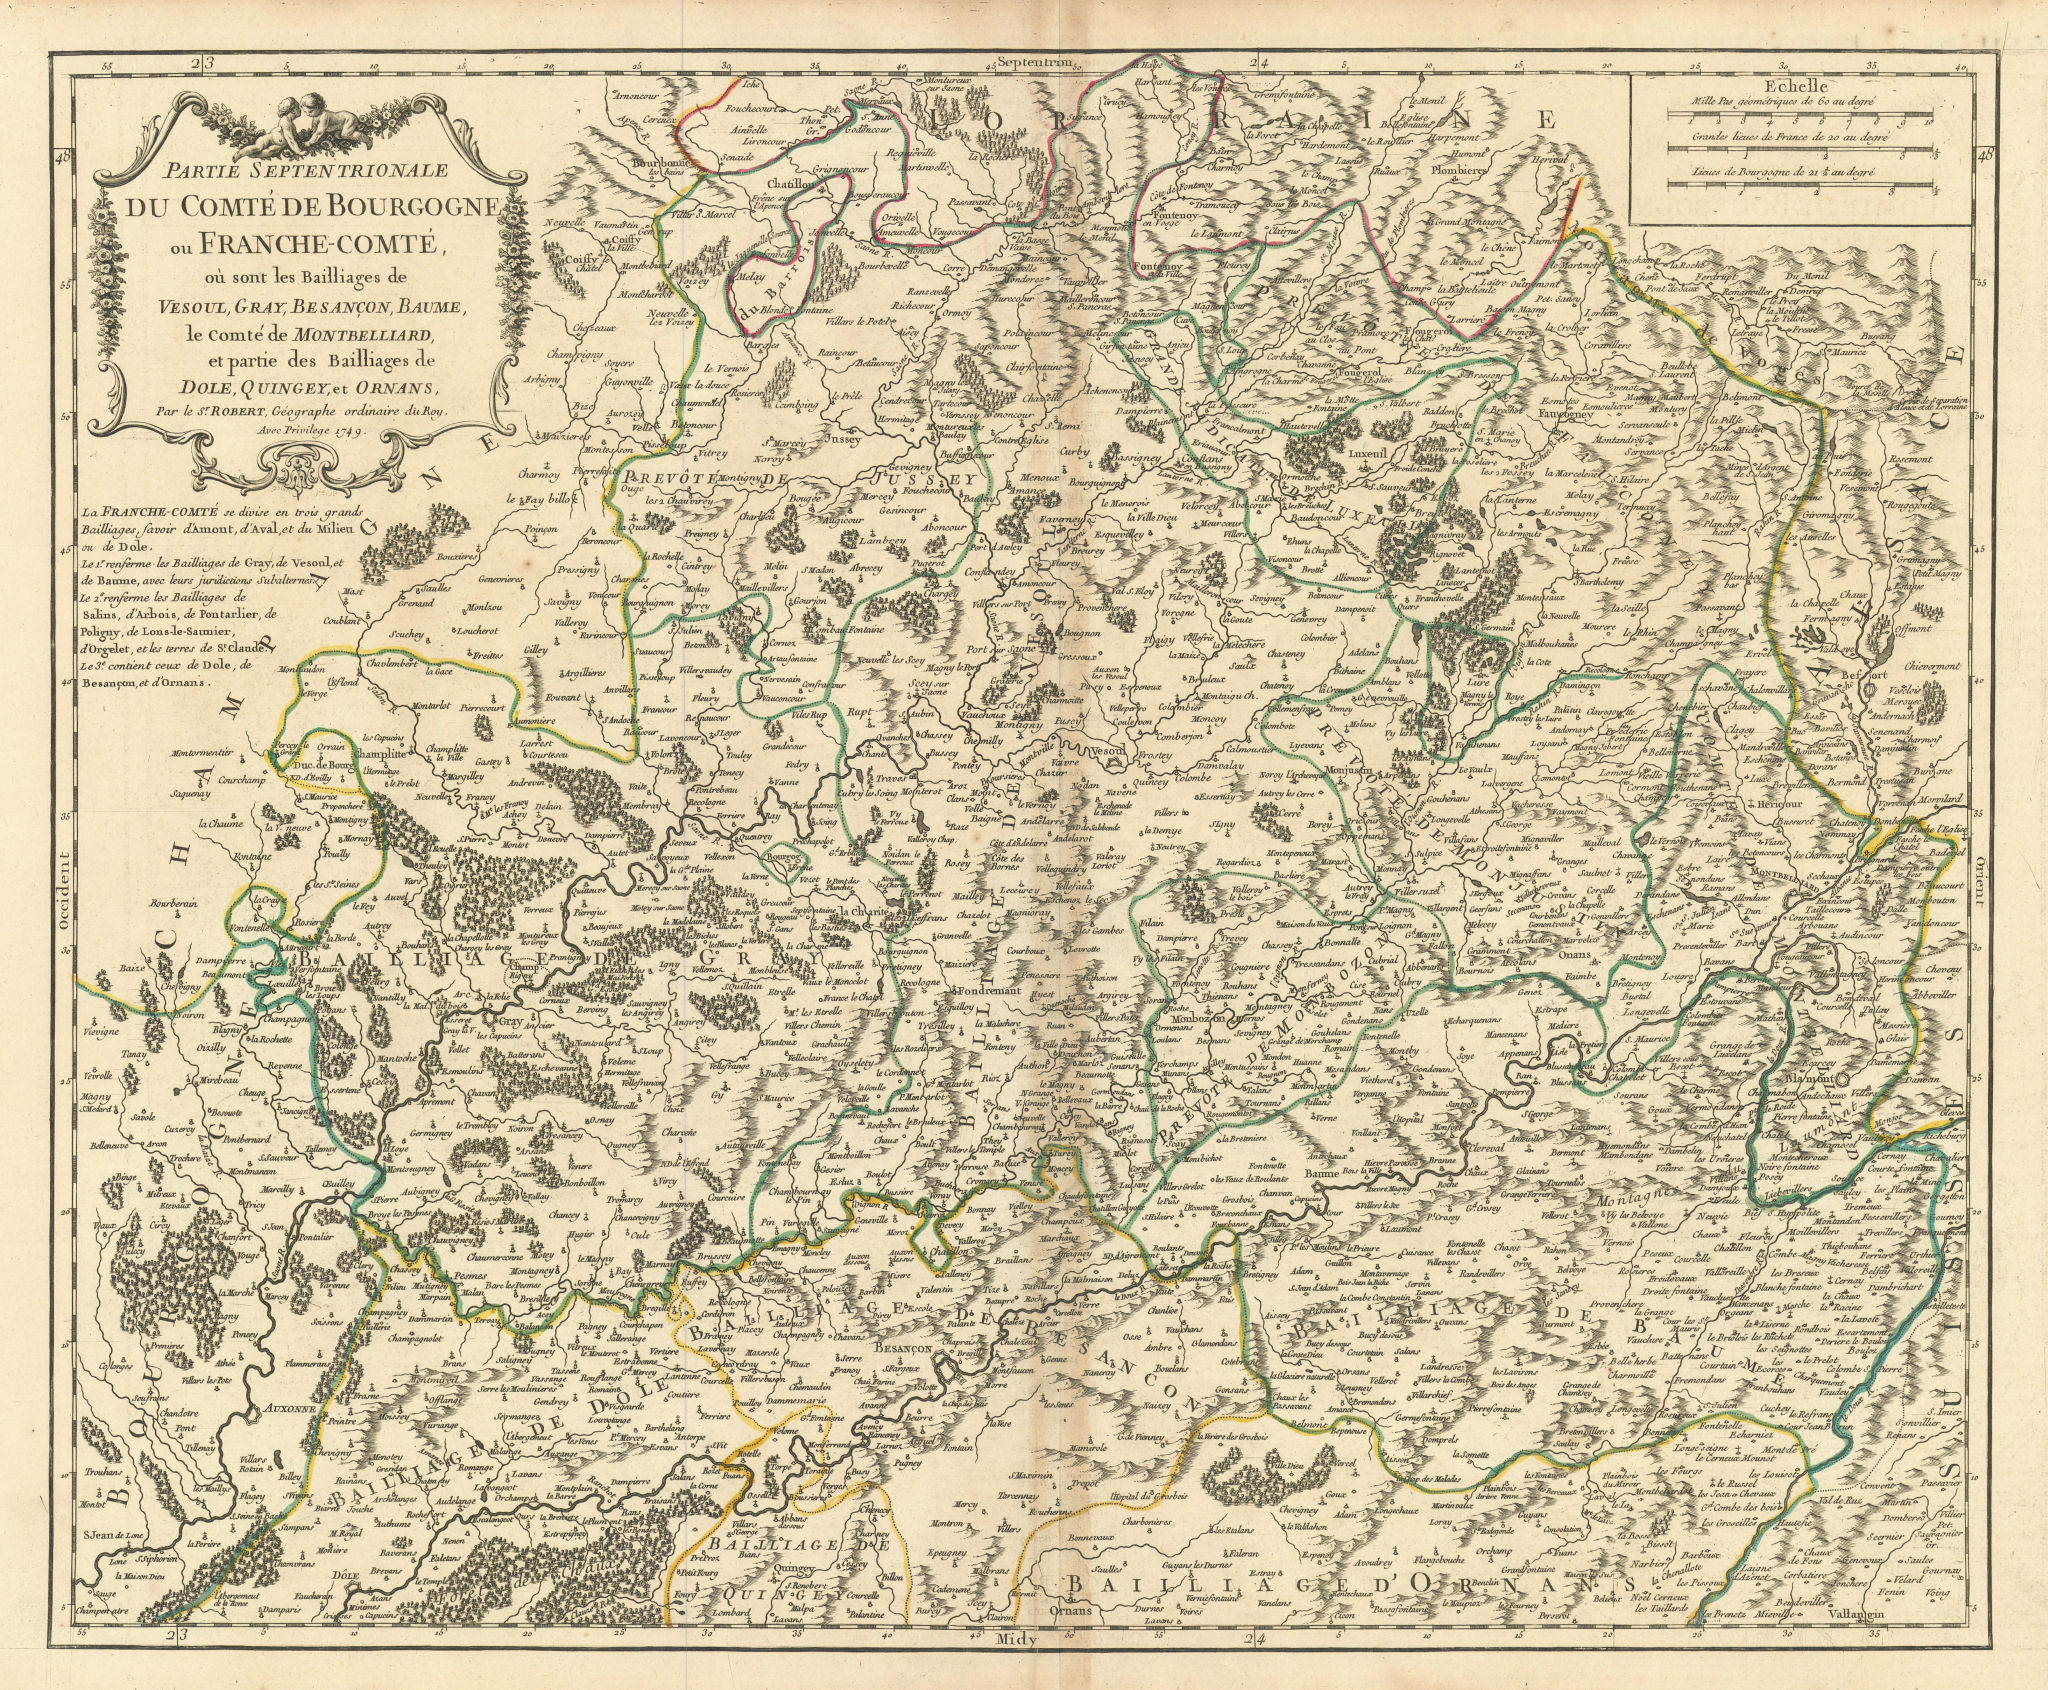 Associate Product Partie Septentrionale… de Bourgogne ou Franche-Comté Hte Saône VAUGONDY 1749 map